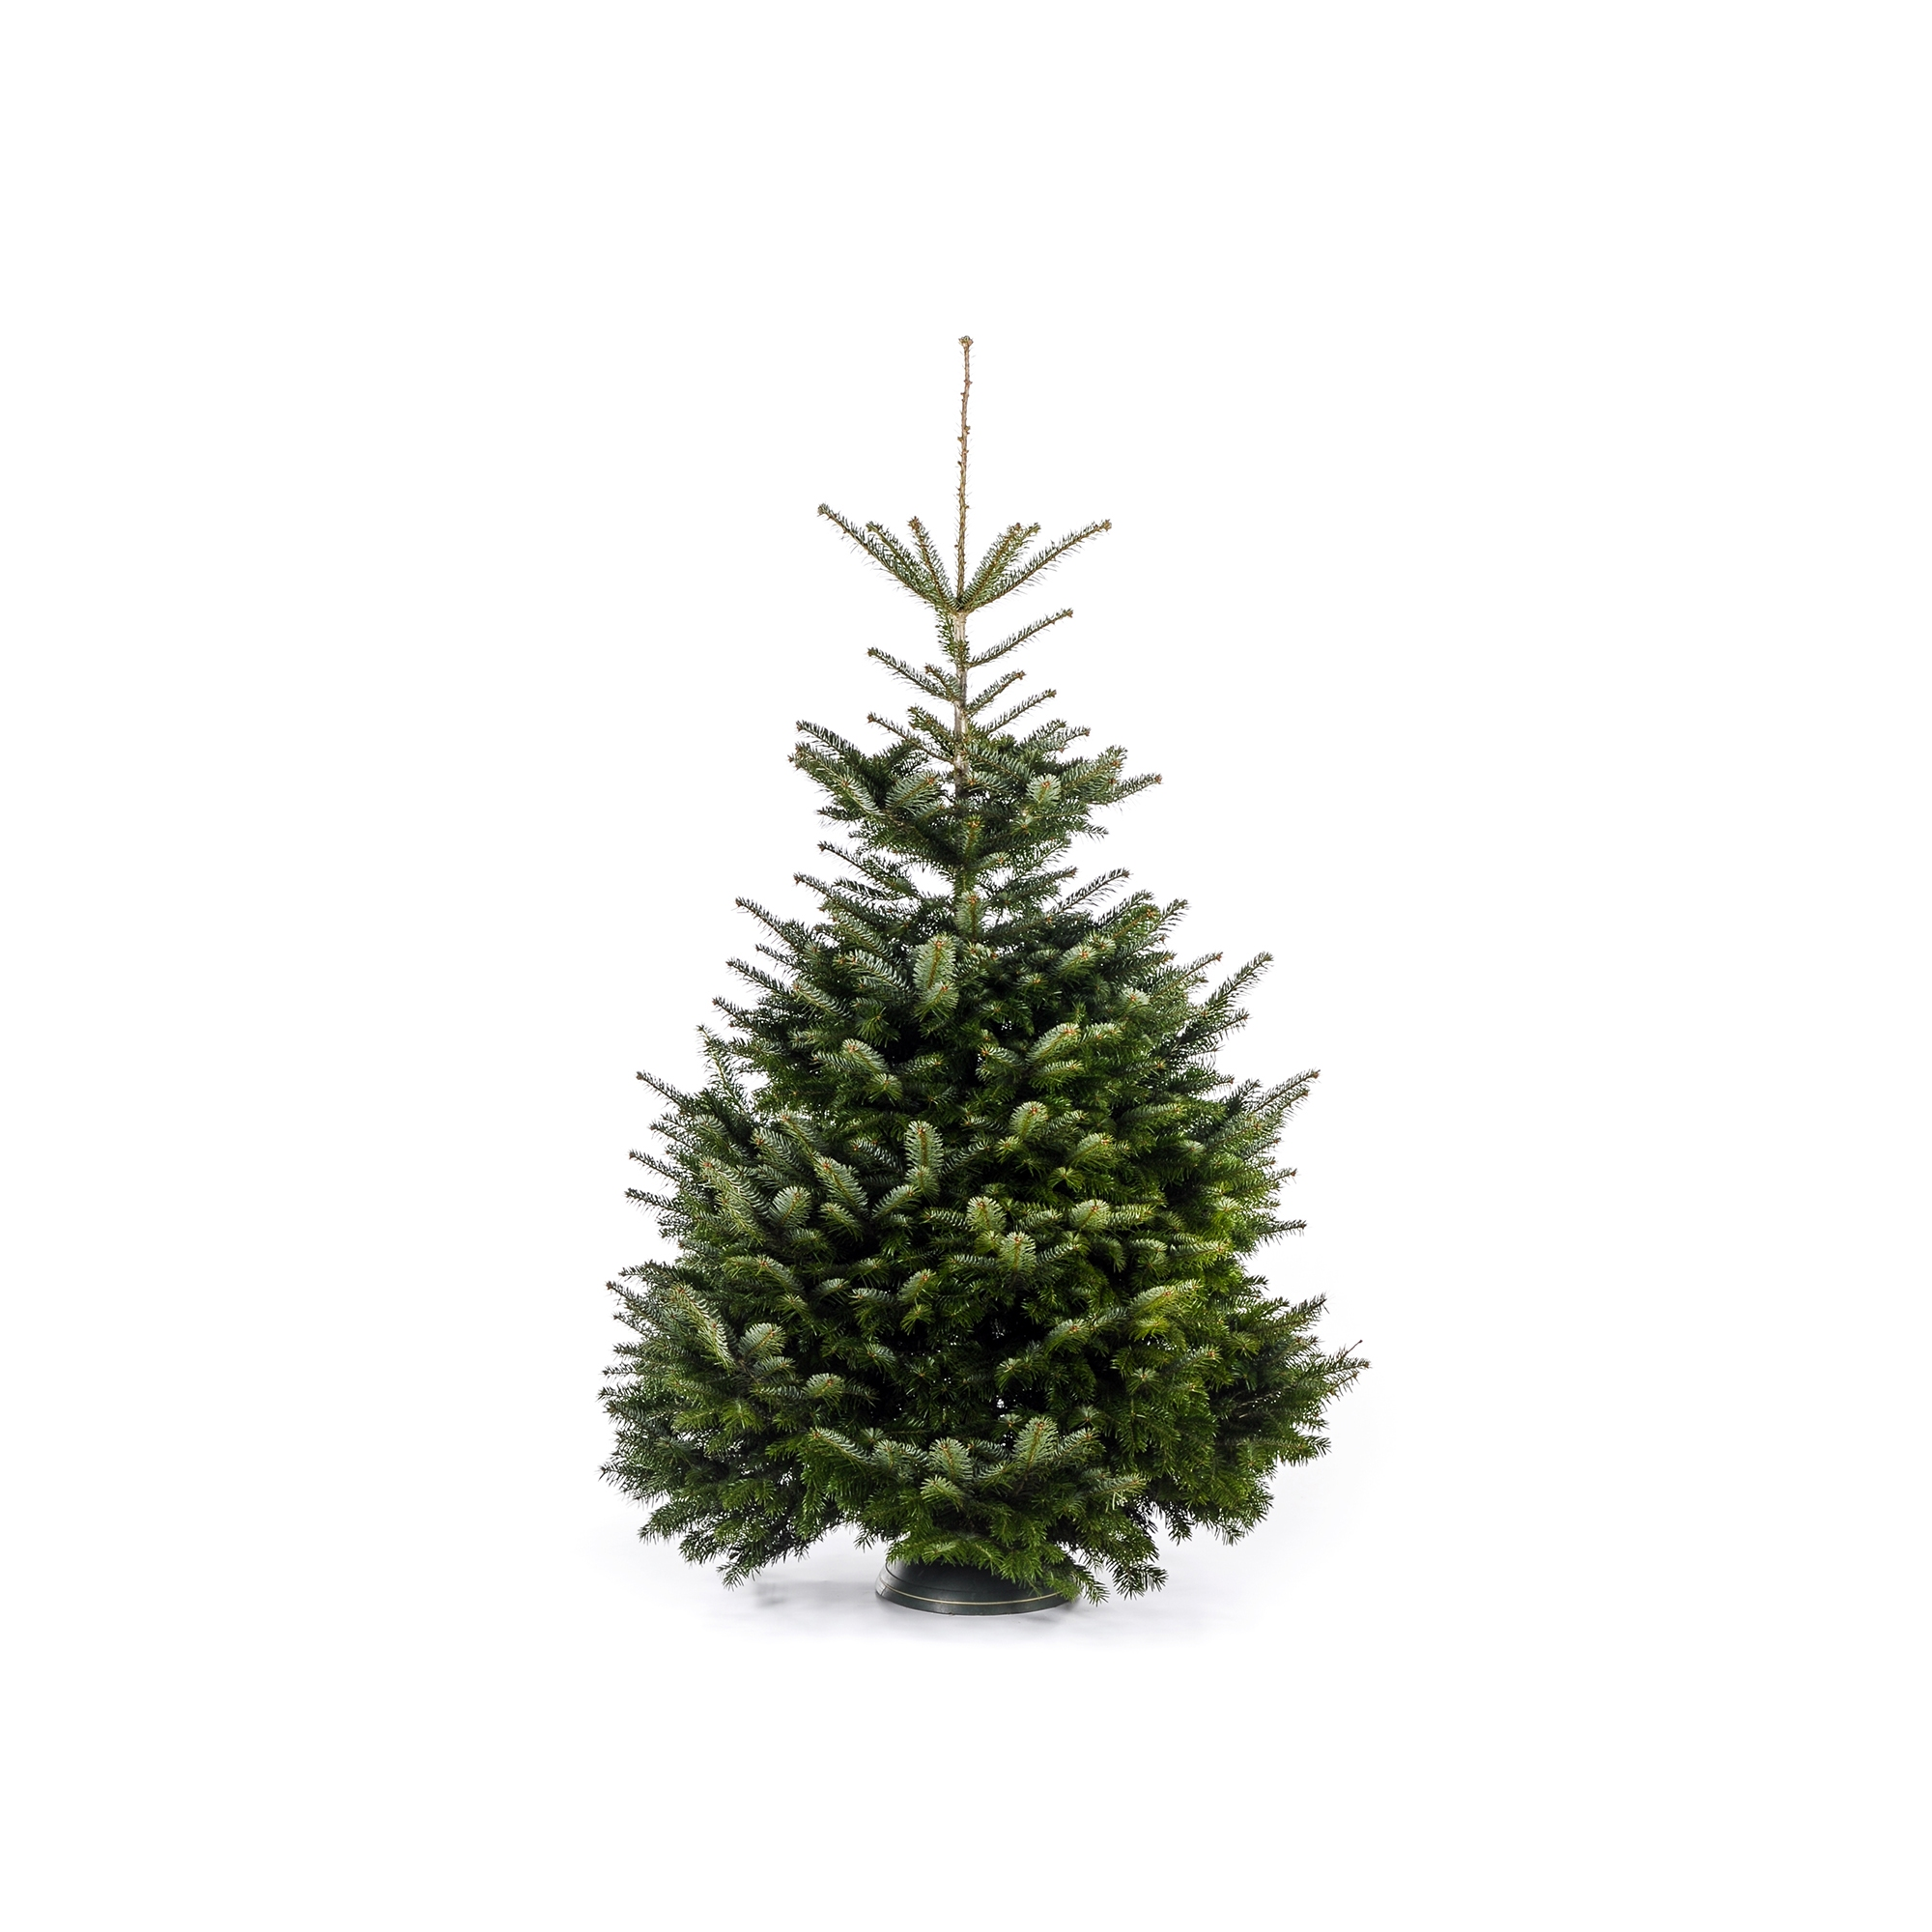 Fair Trees® Weihnachtsbaum Nordmanntanne gesägt 180-220 cm + product picture